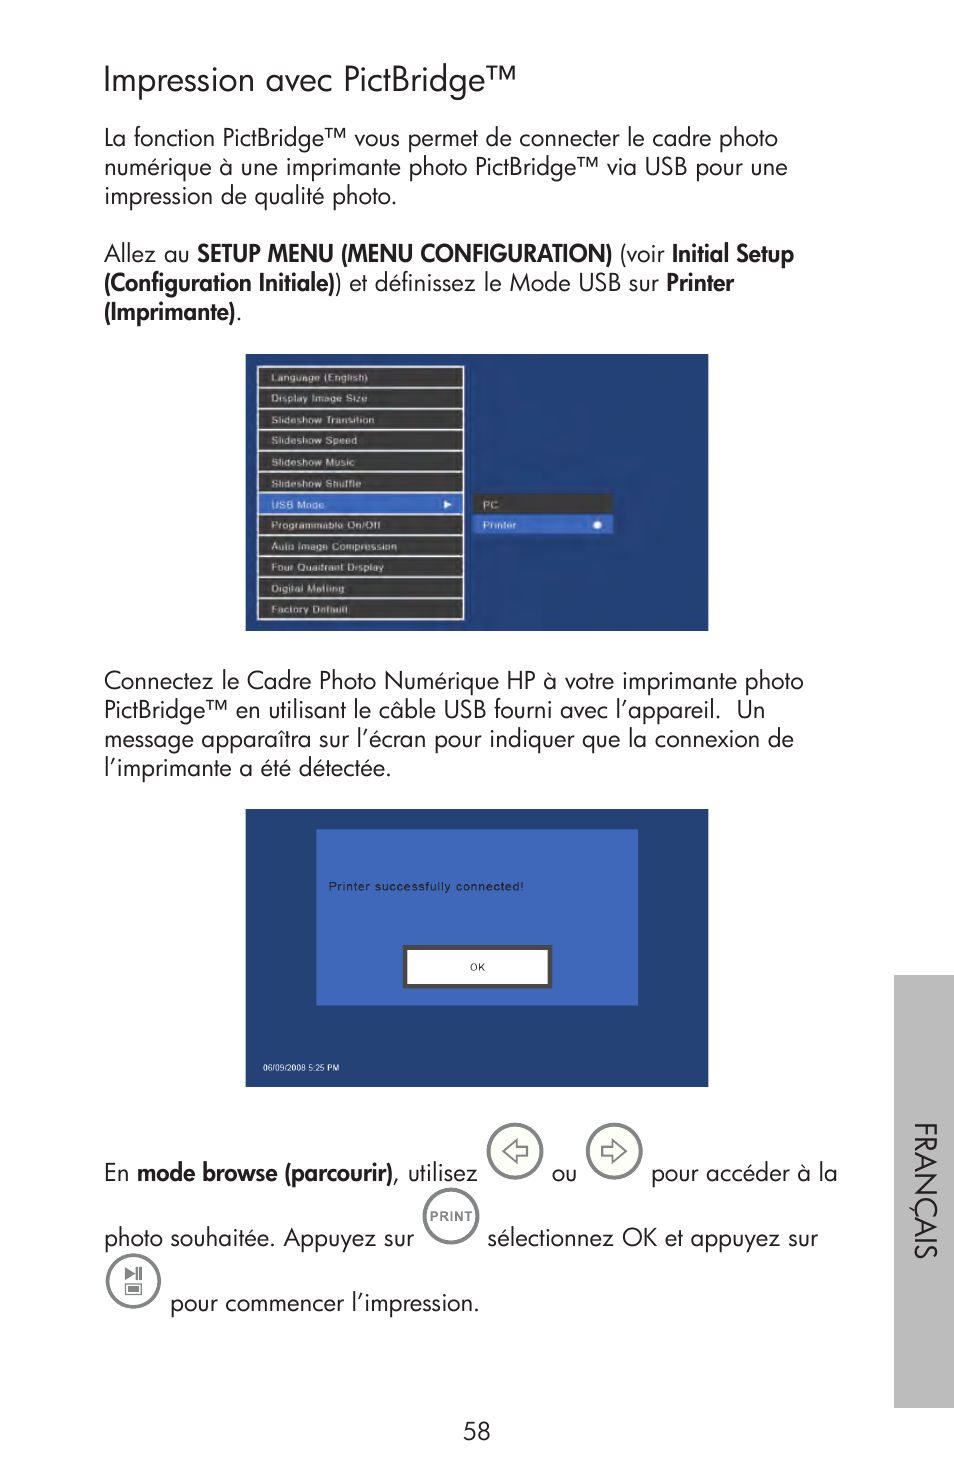 Impression avec pictbridge | HP DF720 Manuel d'utilisation | Page 59 / 80